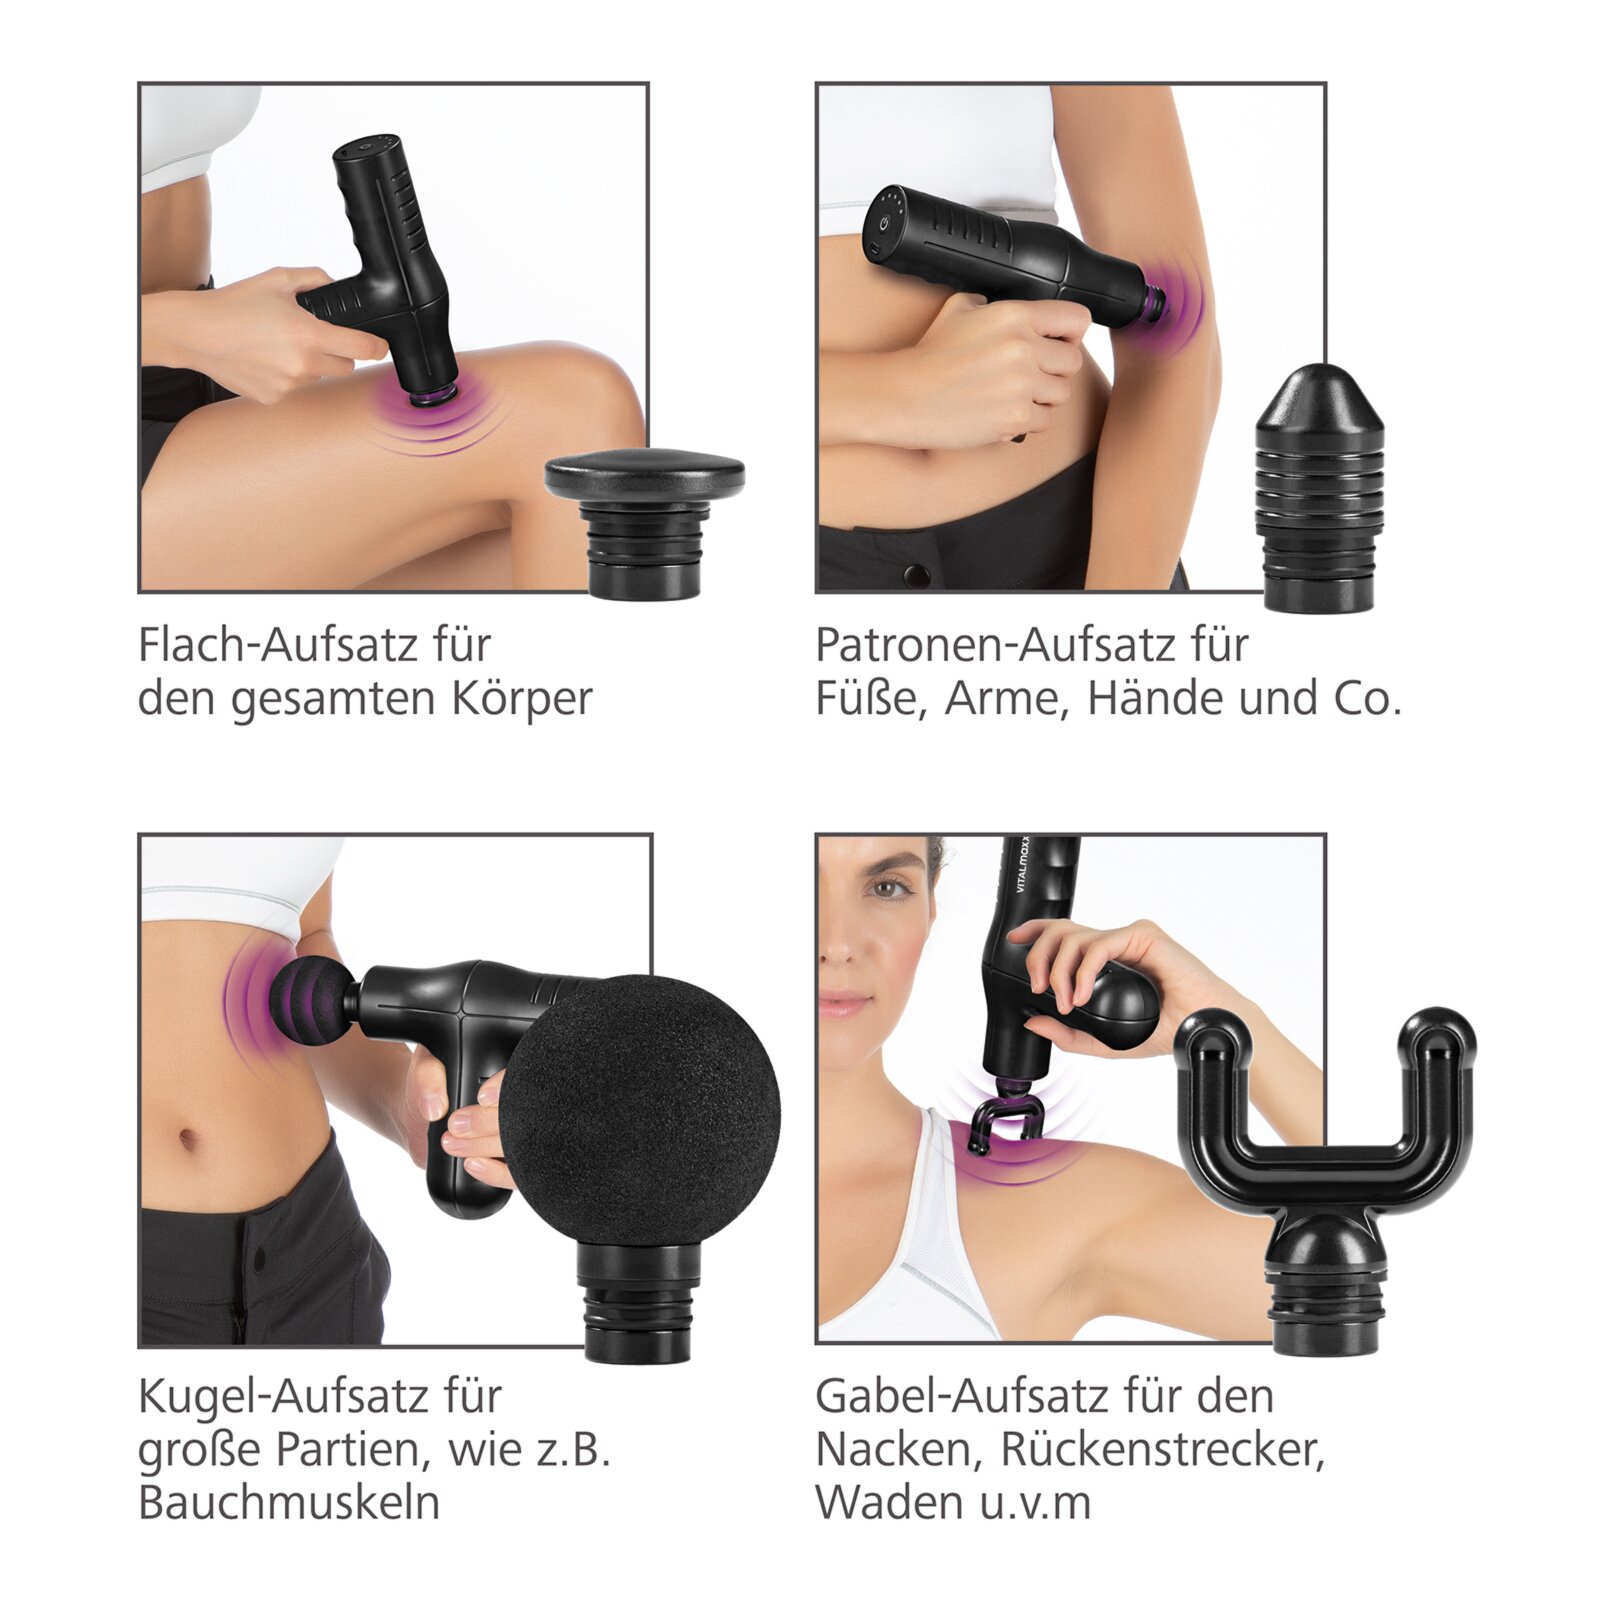 VITALMAXX Mini-Massage Gun - 5 Leistungsstufen | Online bei ROLLER kaufen